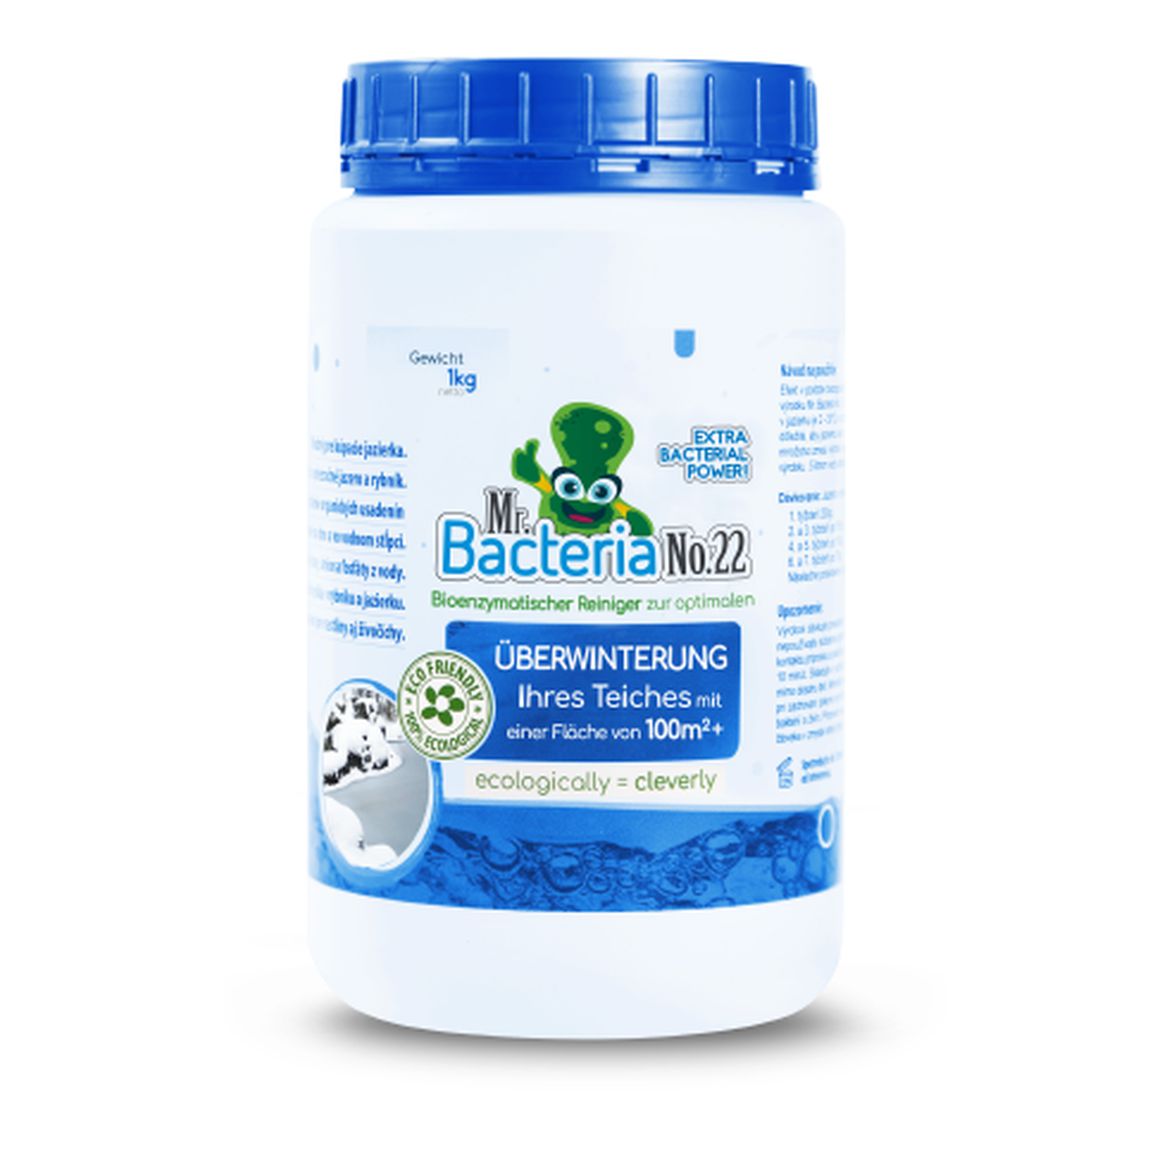 Mr. Bacteria No.22 Bioenzymatischer Reiniger zur optimalen ÜBERWINTERUNG Ihres